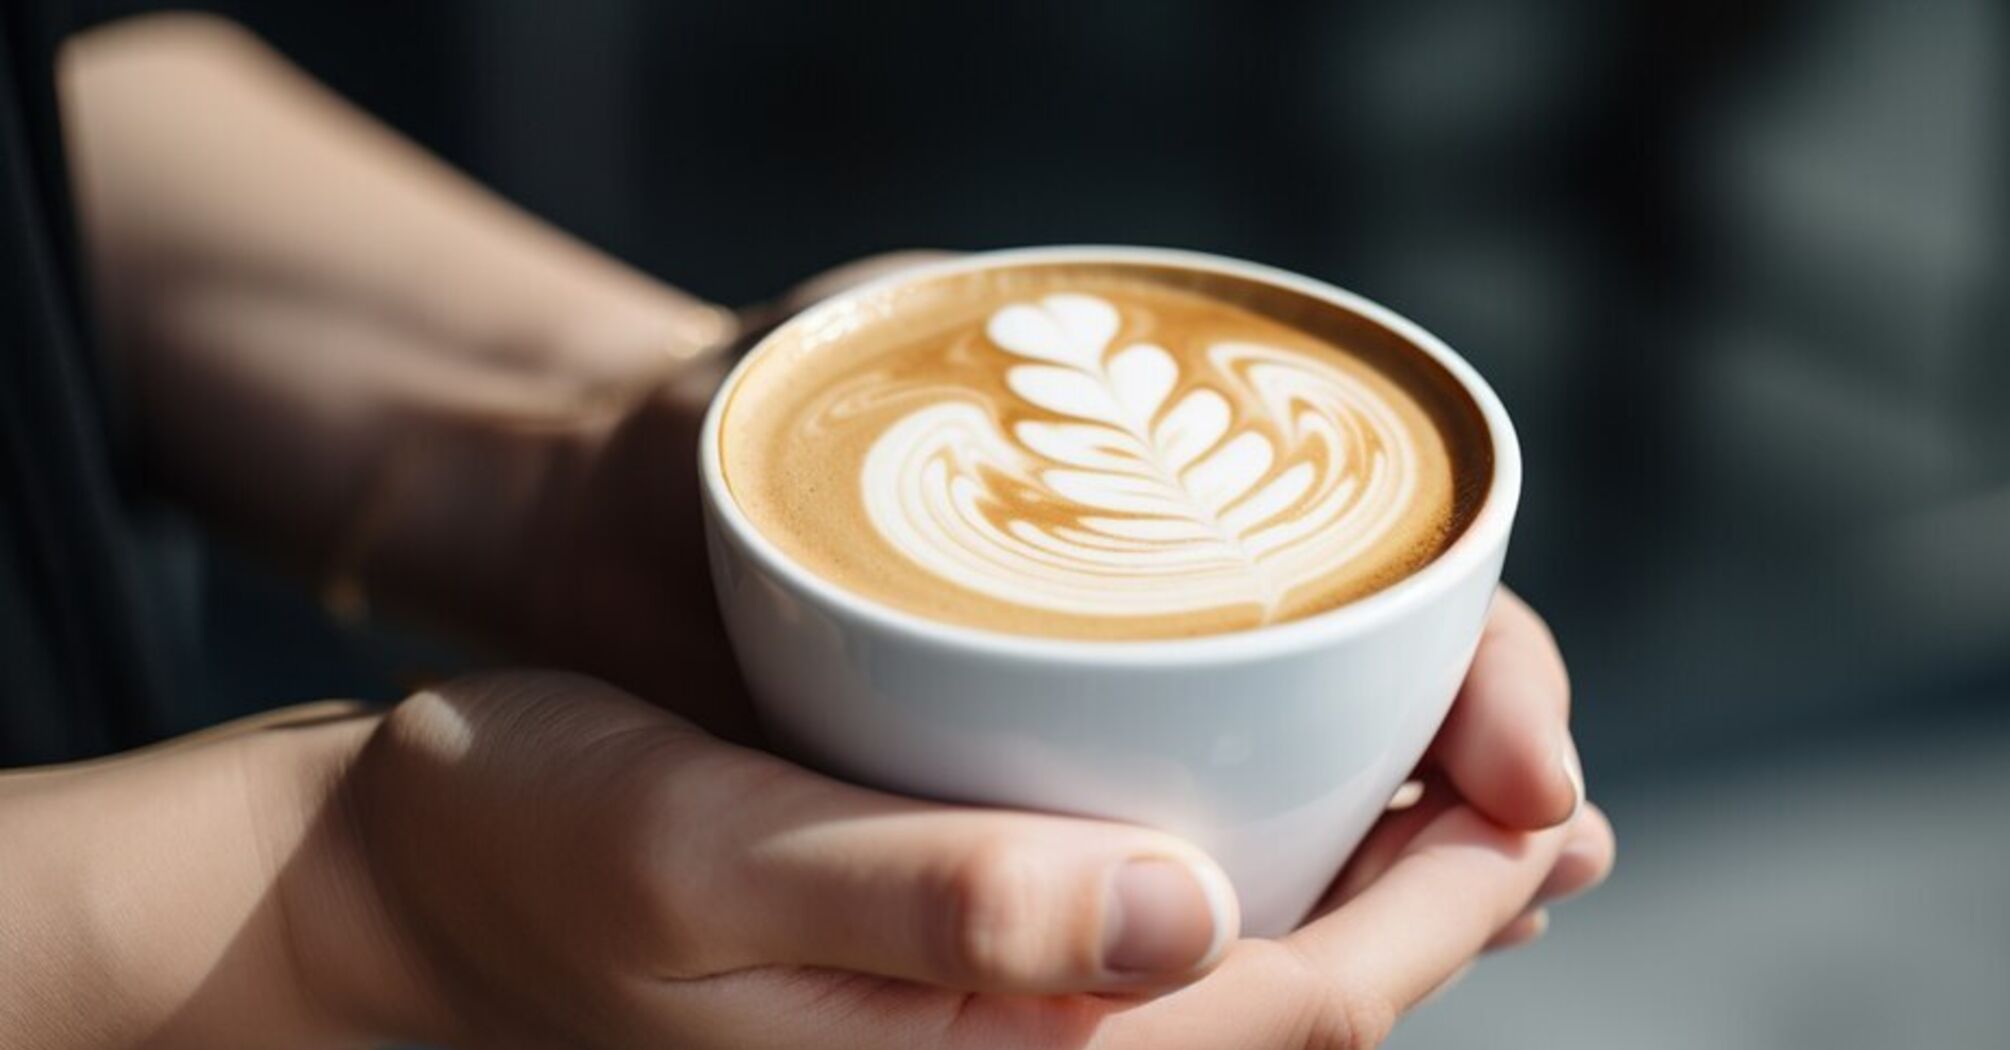 Вага танутиме з кожною чашкою: скільки кави потрібно пити щодня, щоб худнути